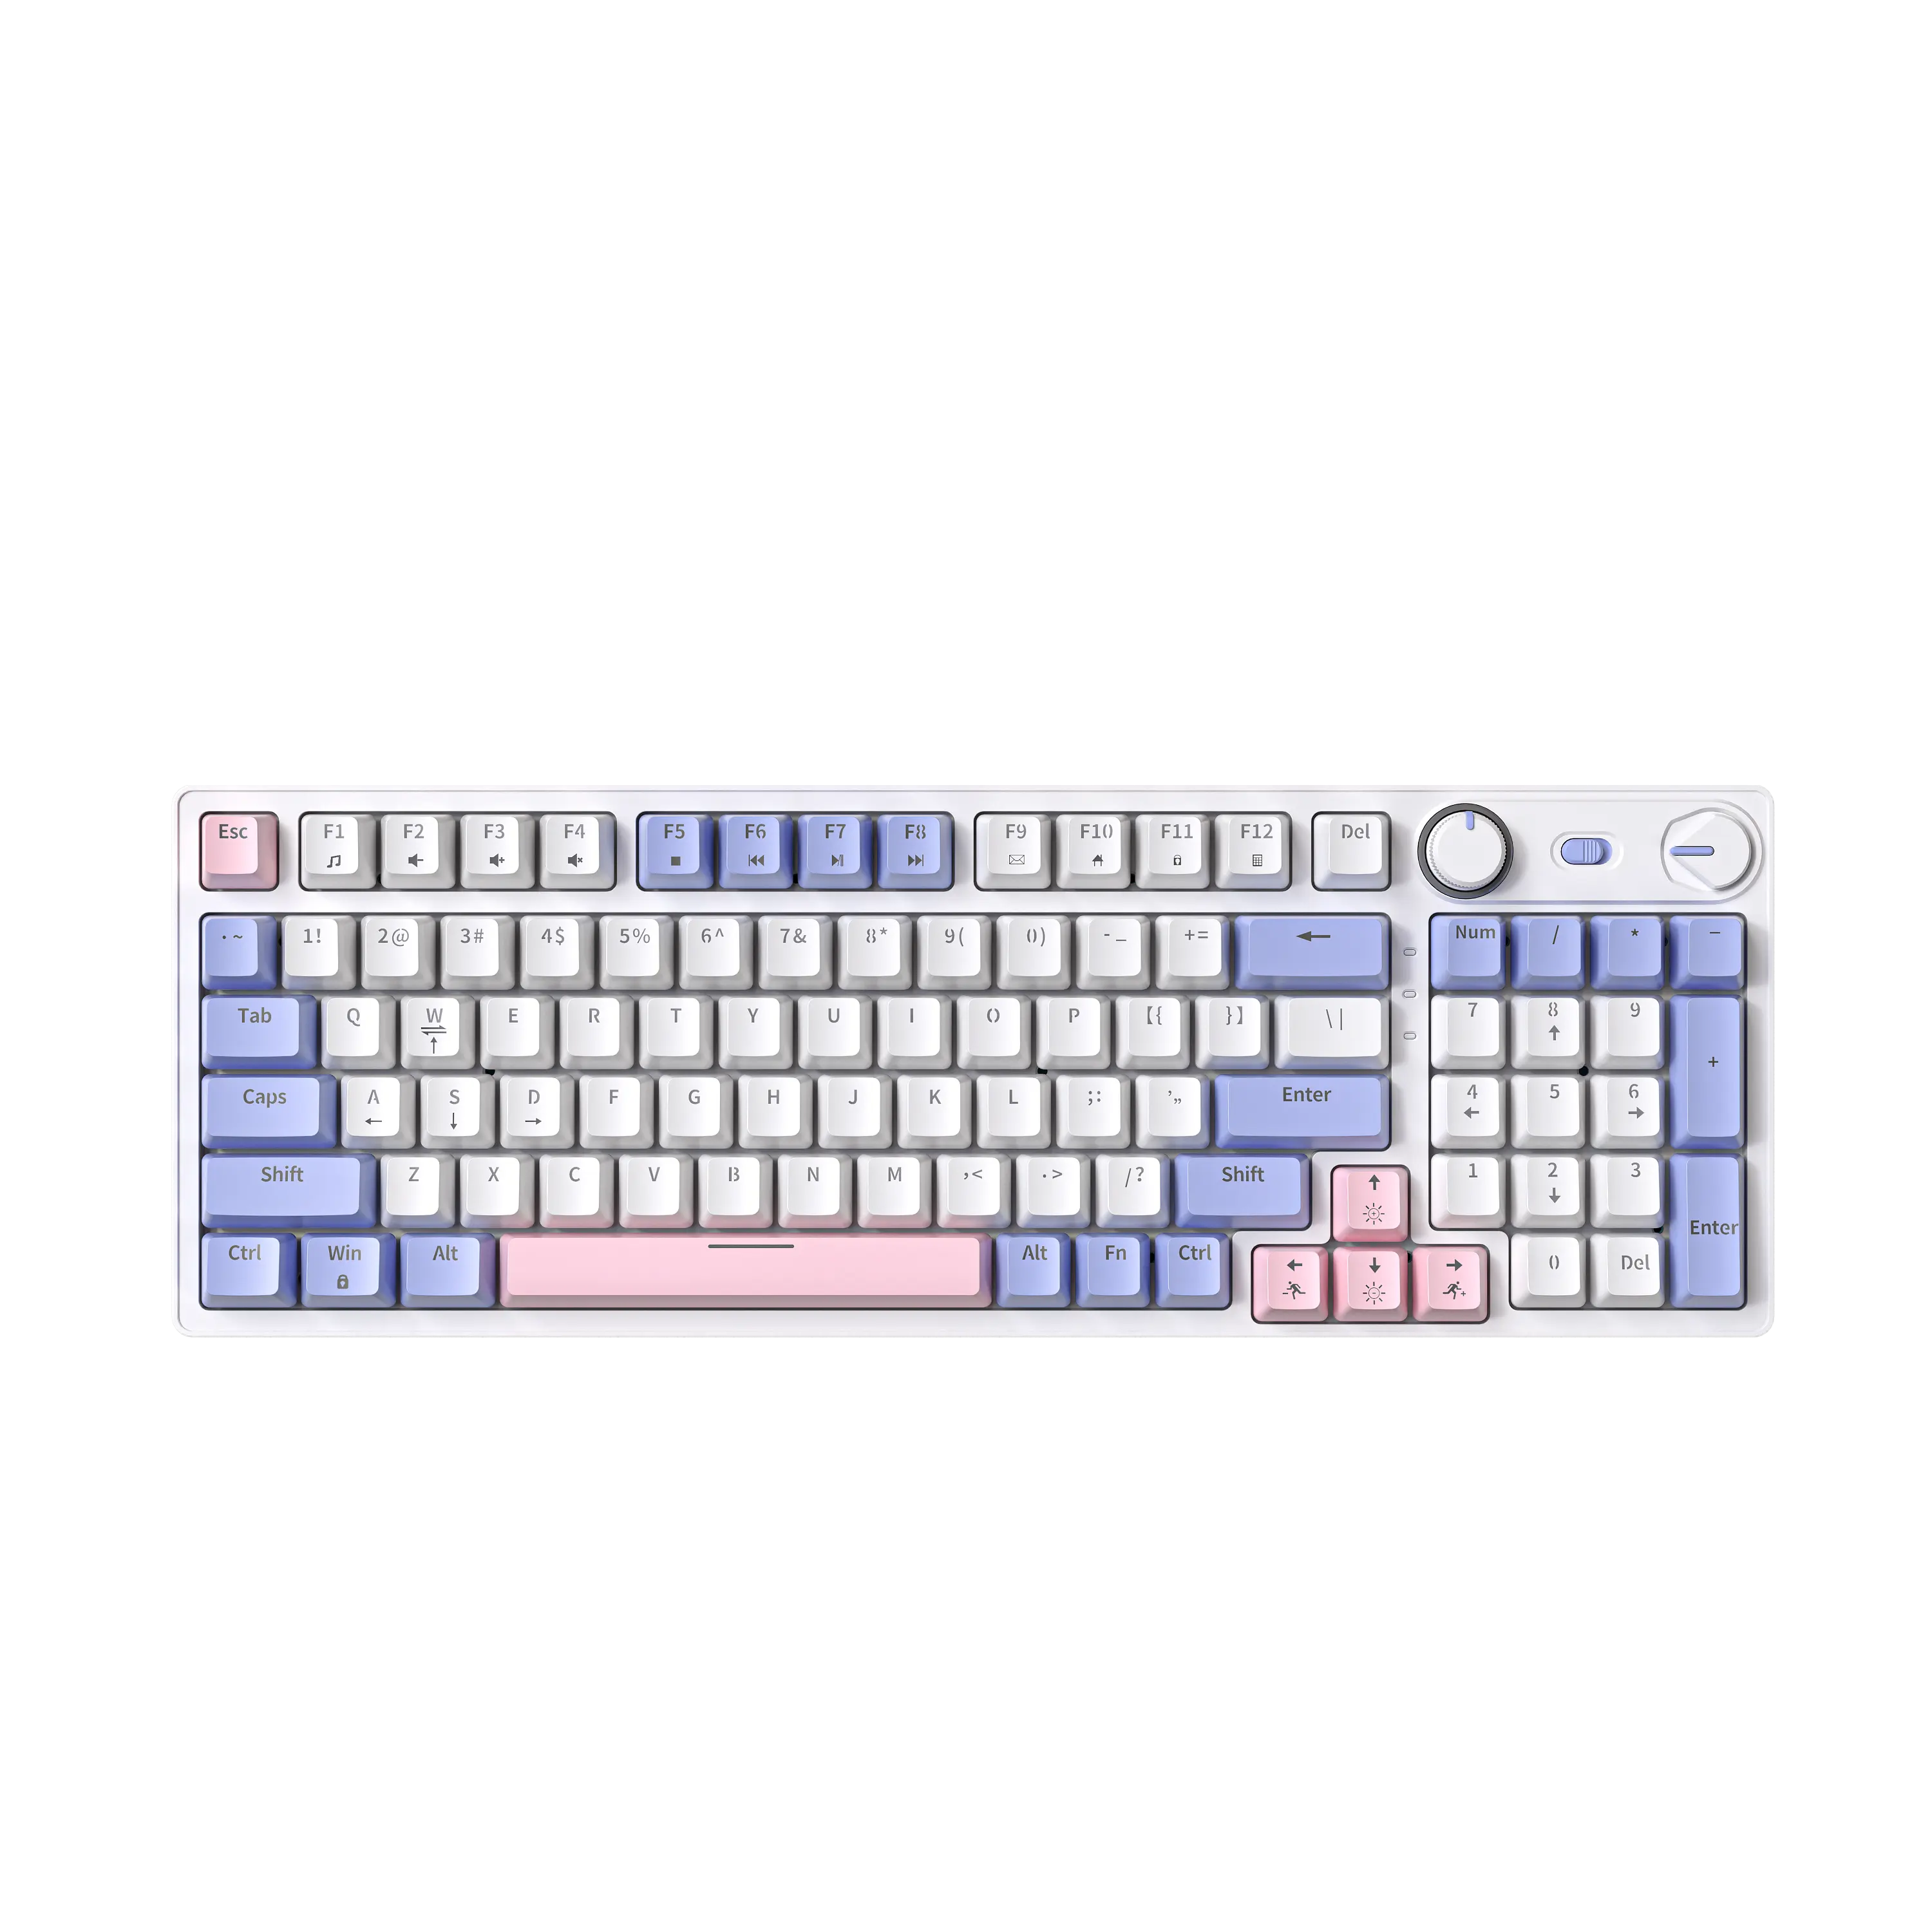 Keycap personalizzato in ABS a iniezione a due colori 98 tasti Hot swap RGB retroilluminati N tasti rollover tastiera meccanica da gioco Wireless